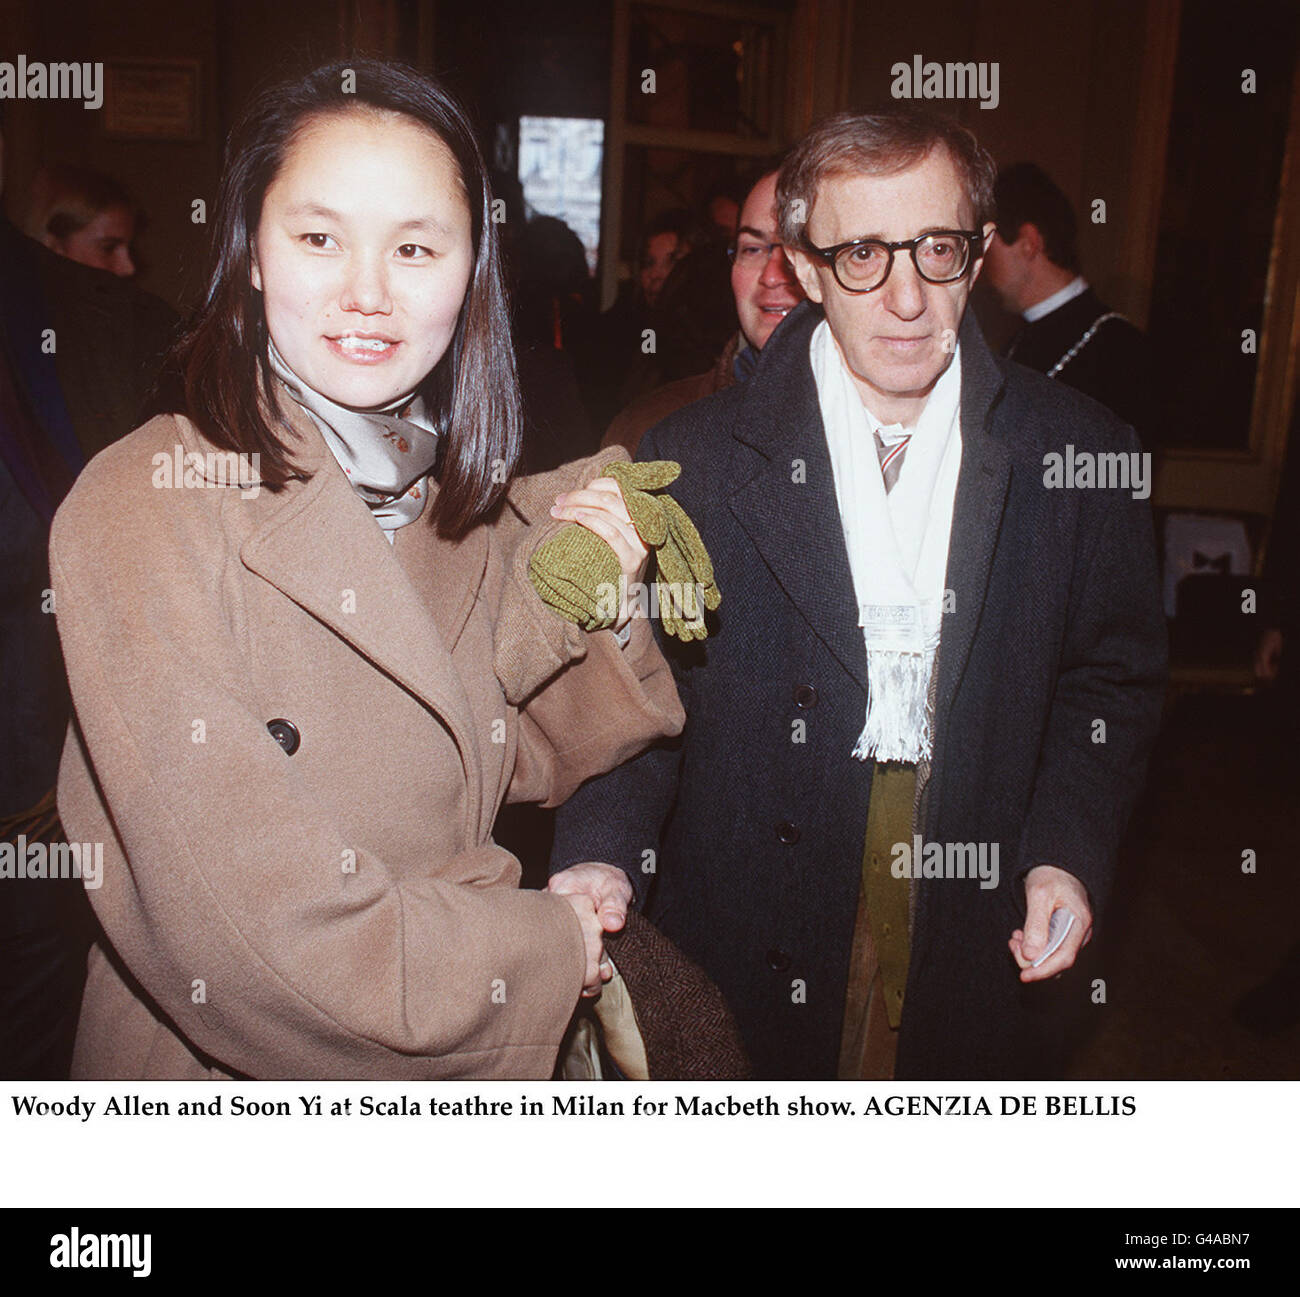 Woody Allen e presto Yi al Teatro alla Scala in Milano per una mostra di Macbeth Foto Stock